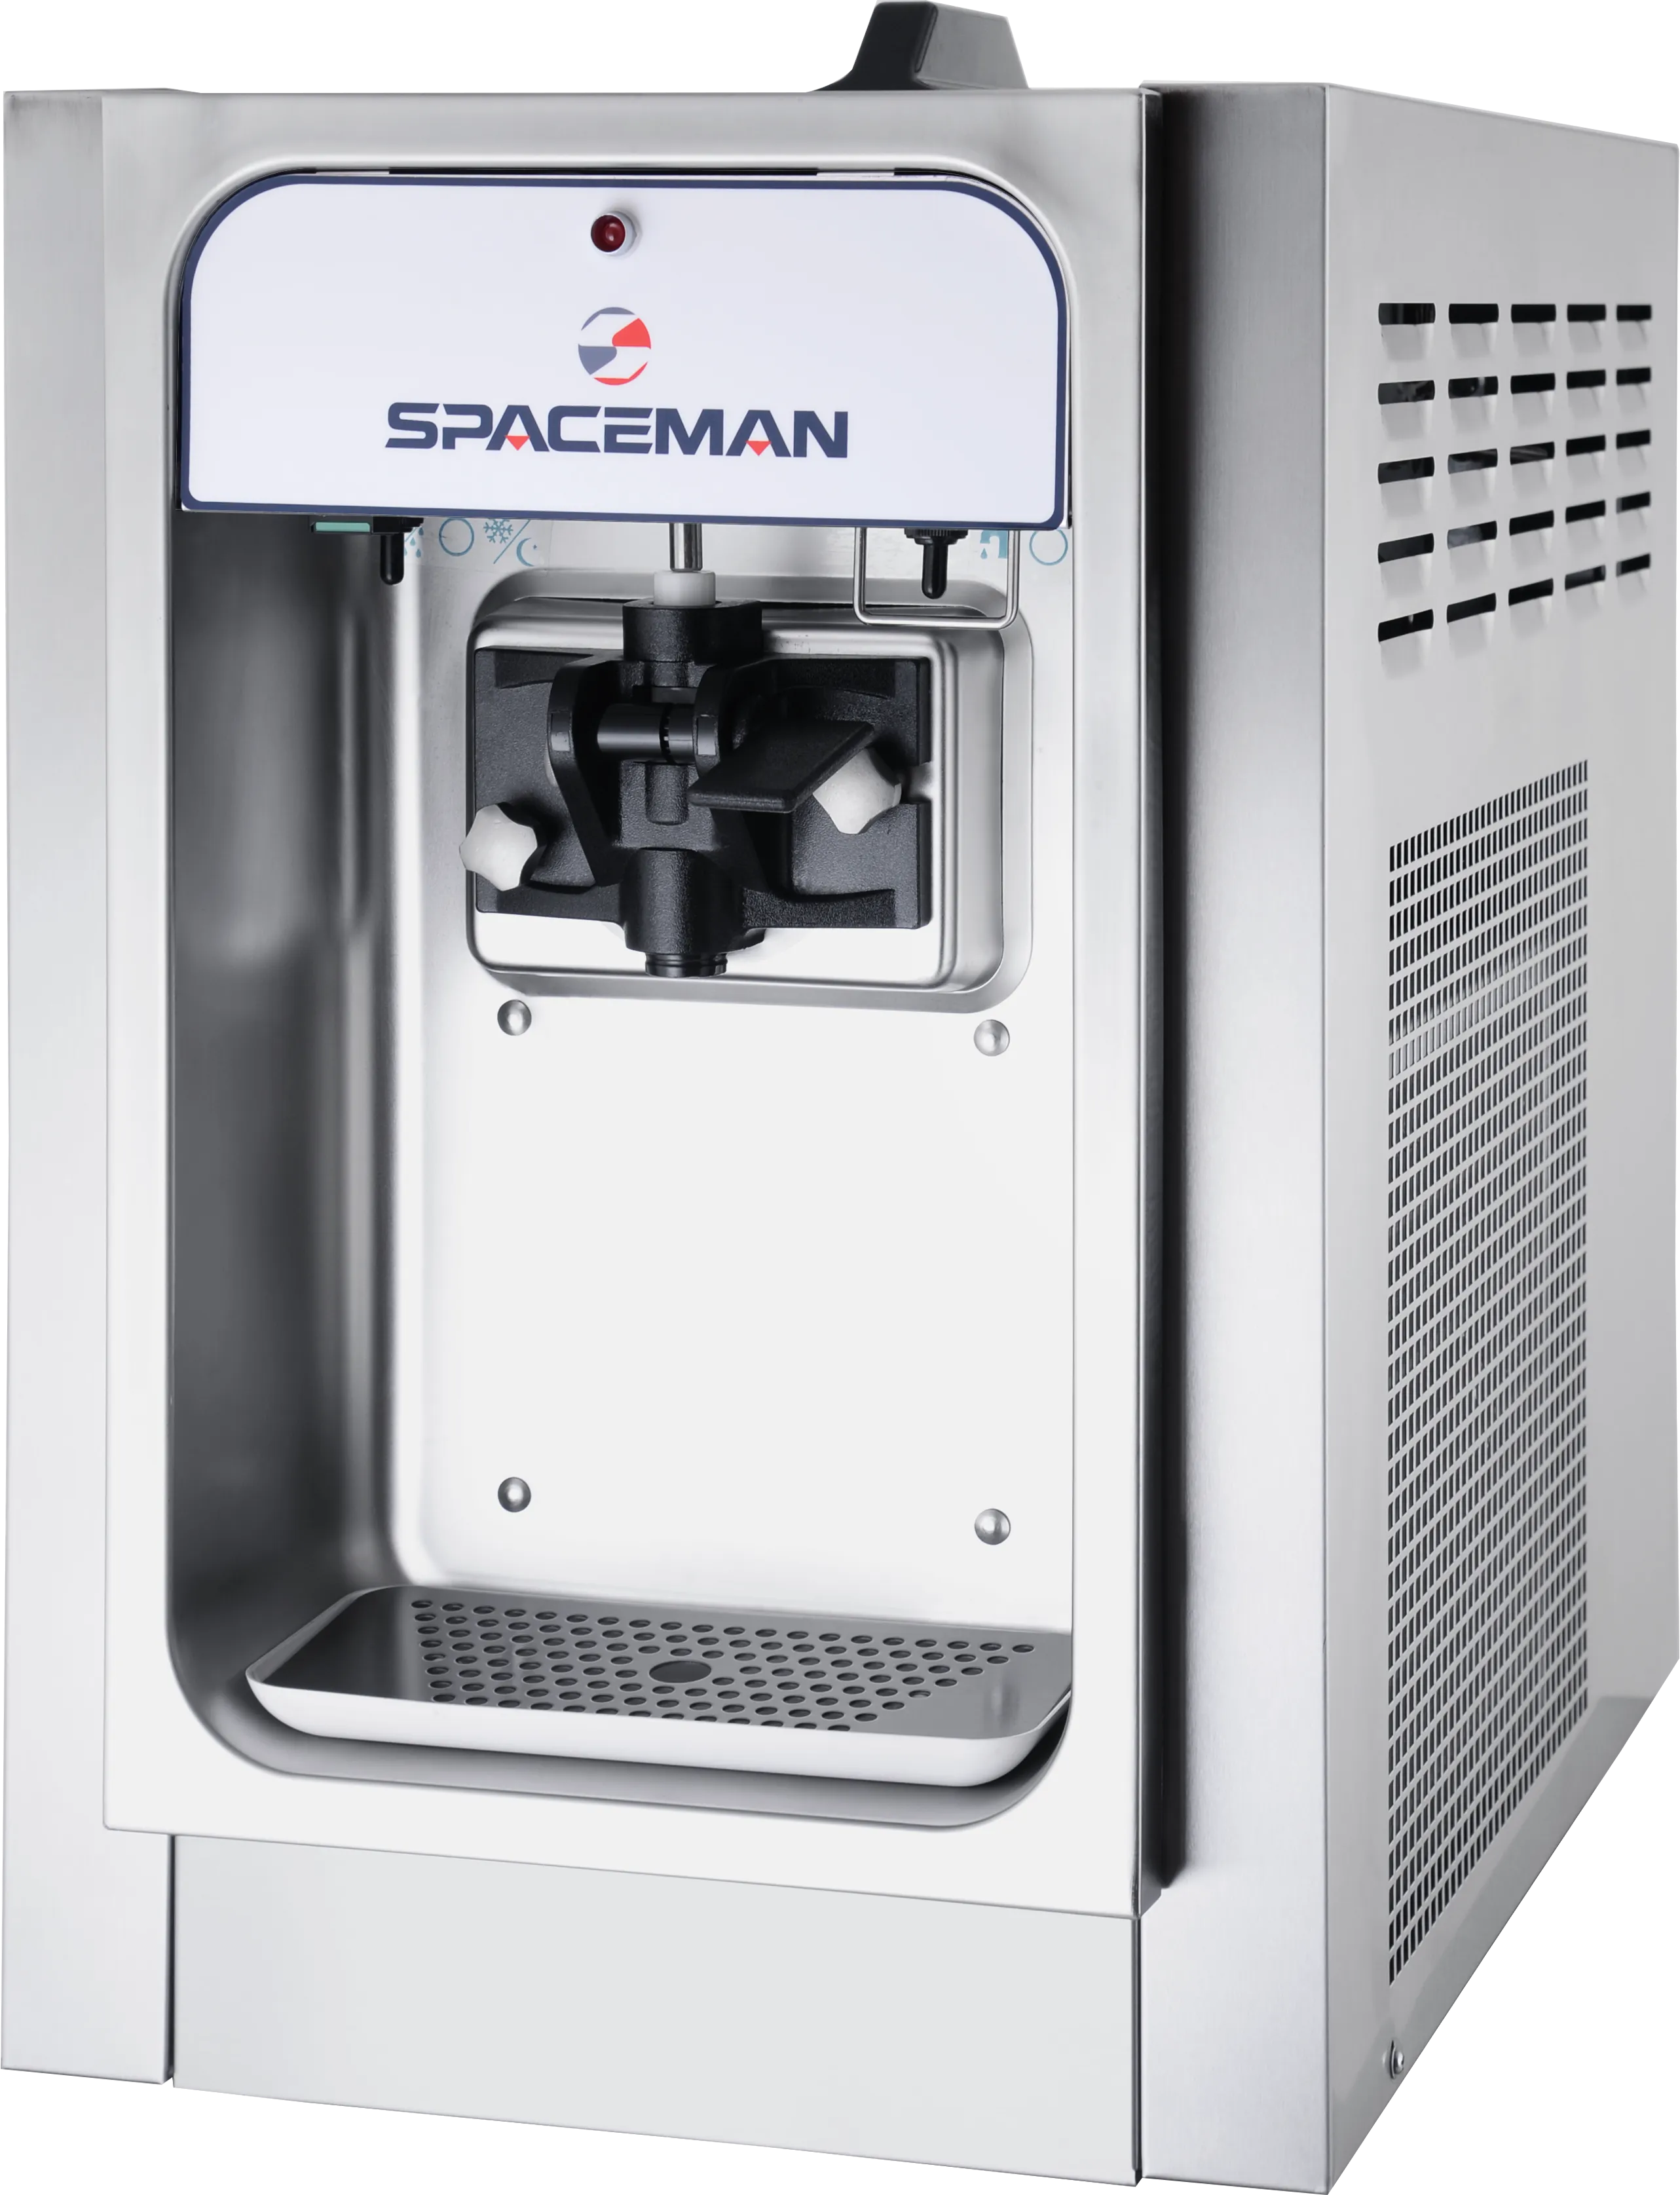 Spaceman T15 Soft Serve Ice Cream Machine